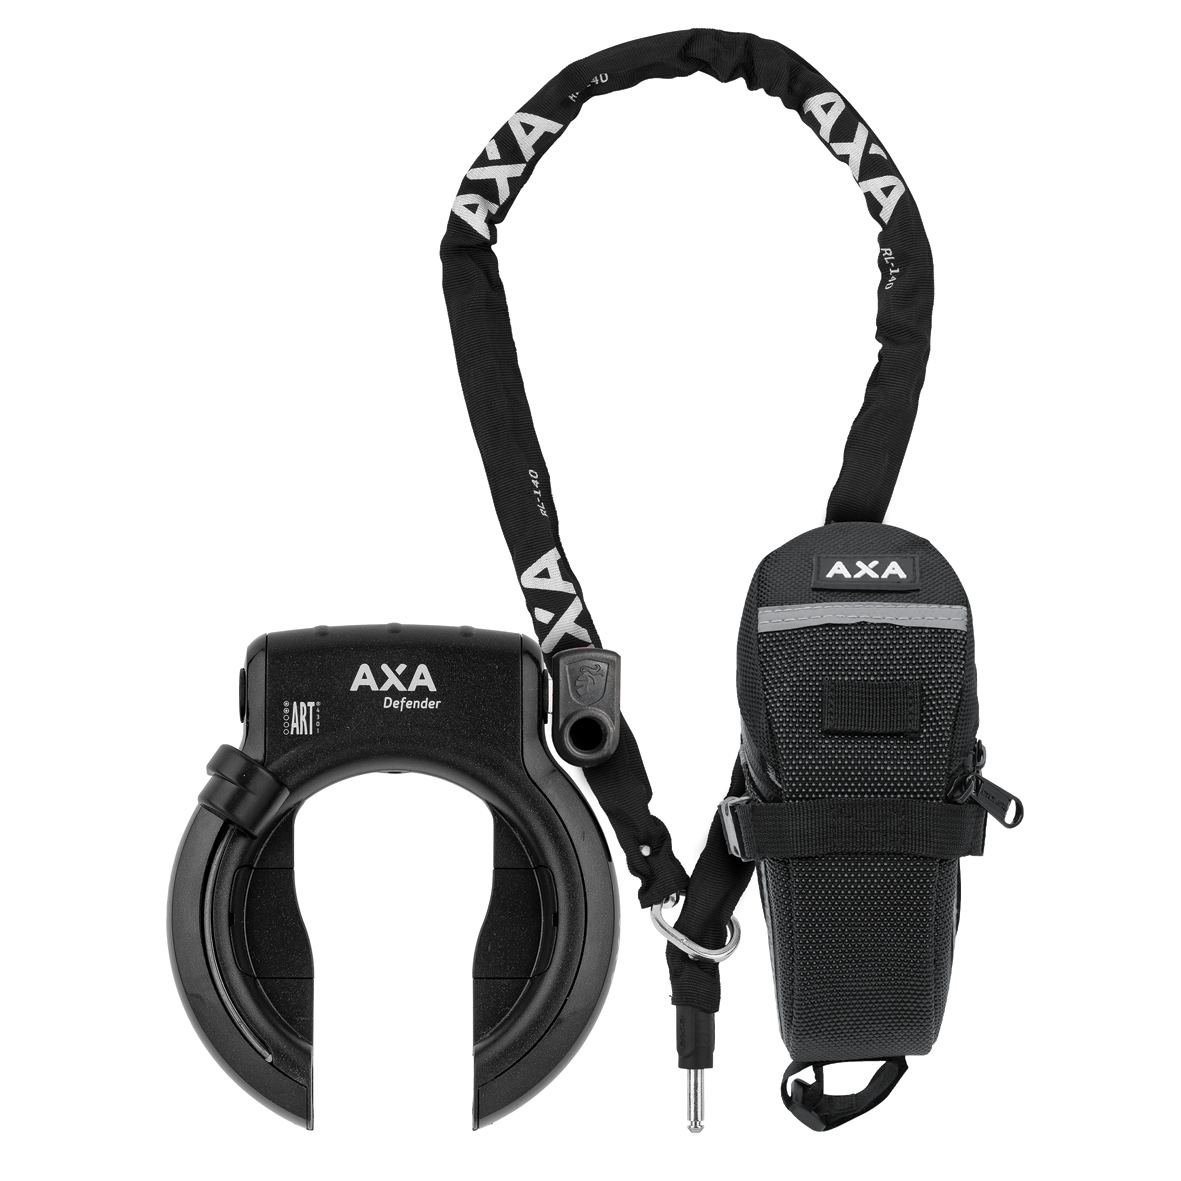 applaus hoffelijkheid totaal AXA Defender + RLC 140 + bag set | Producten